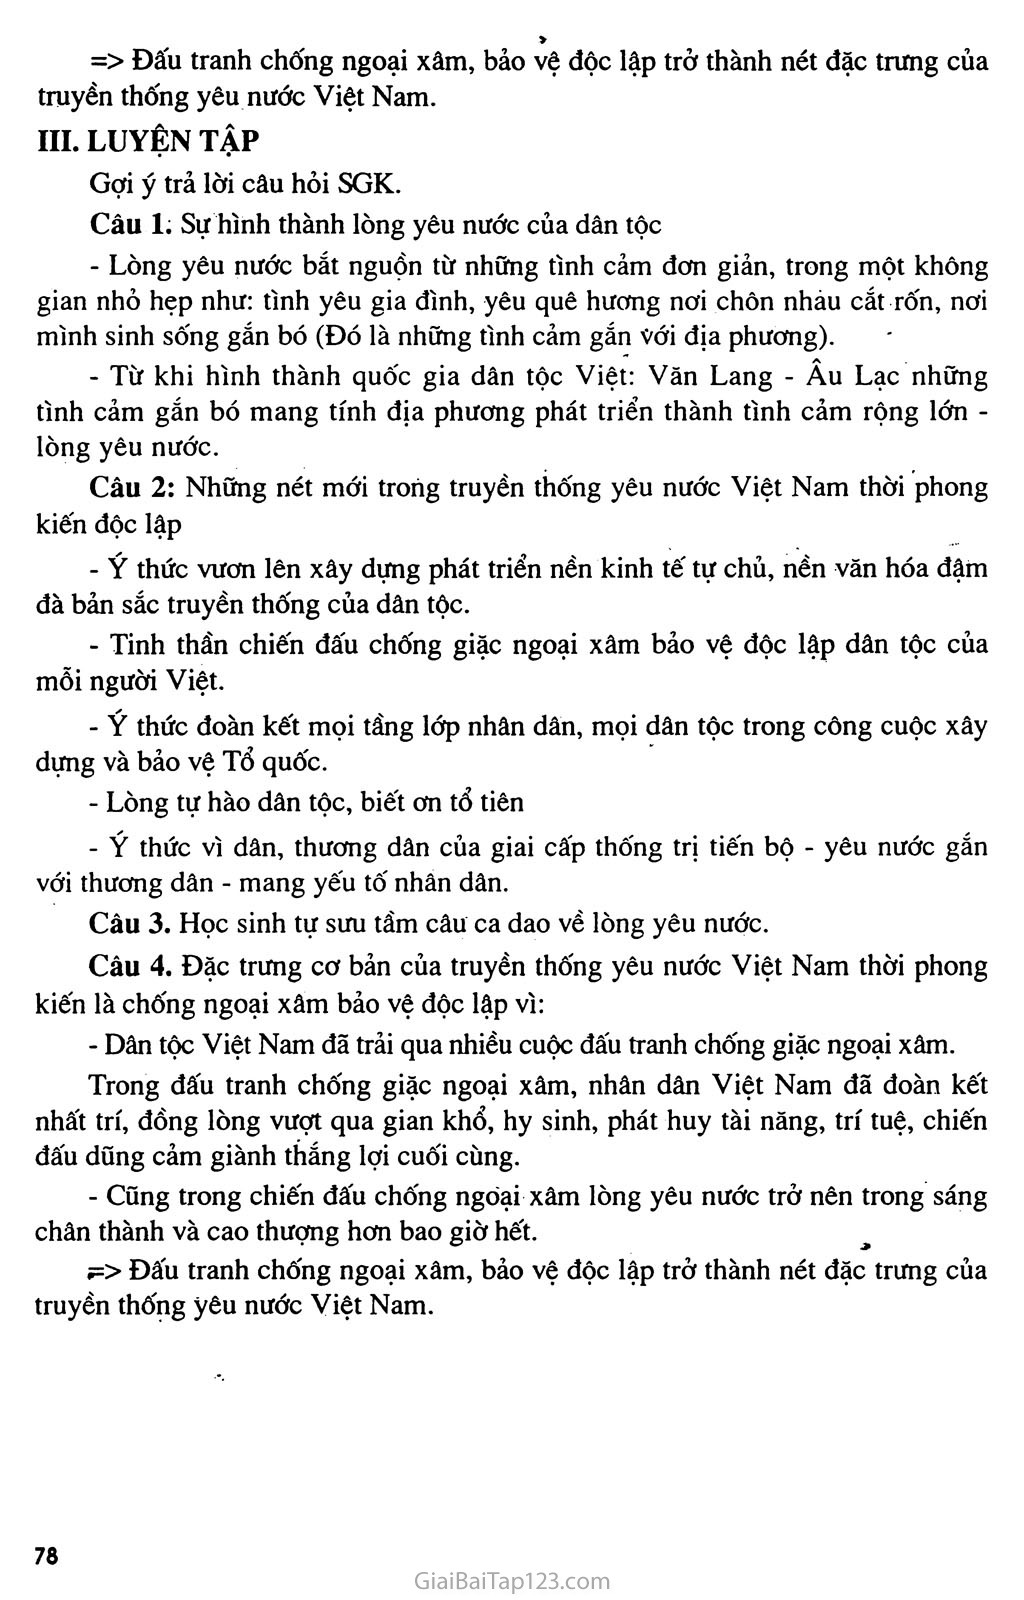 Bài 28: Truyền thống yêu nước của dân tộc Việt Nam thời phong kiến trang 3